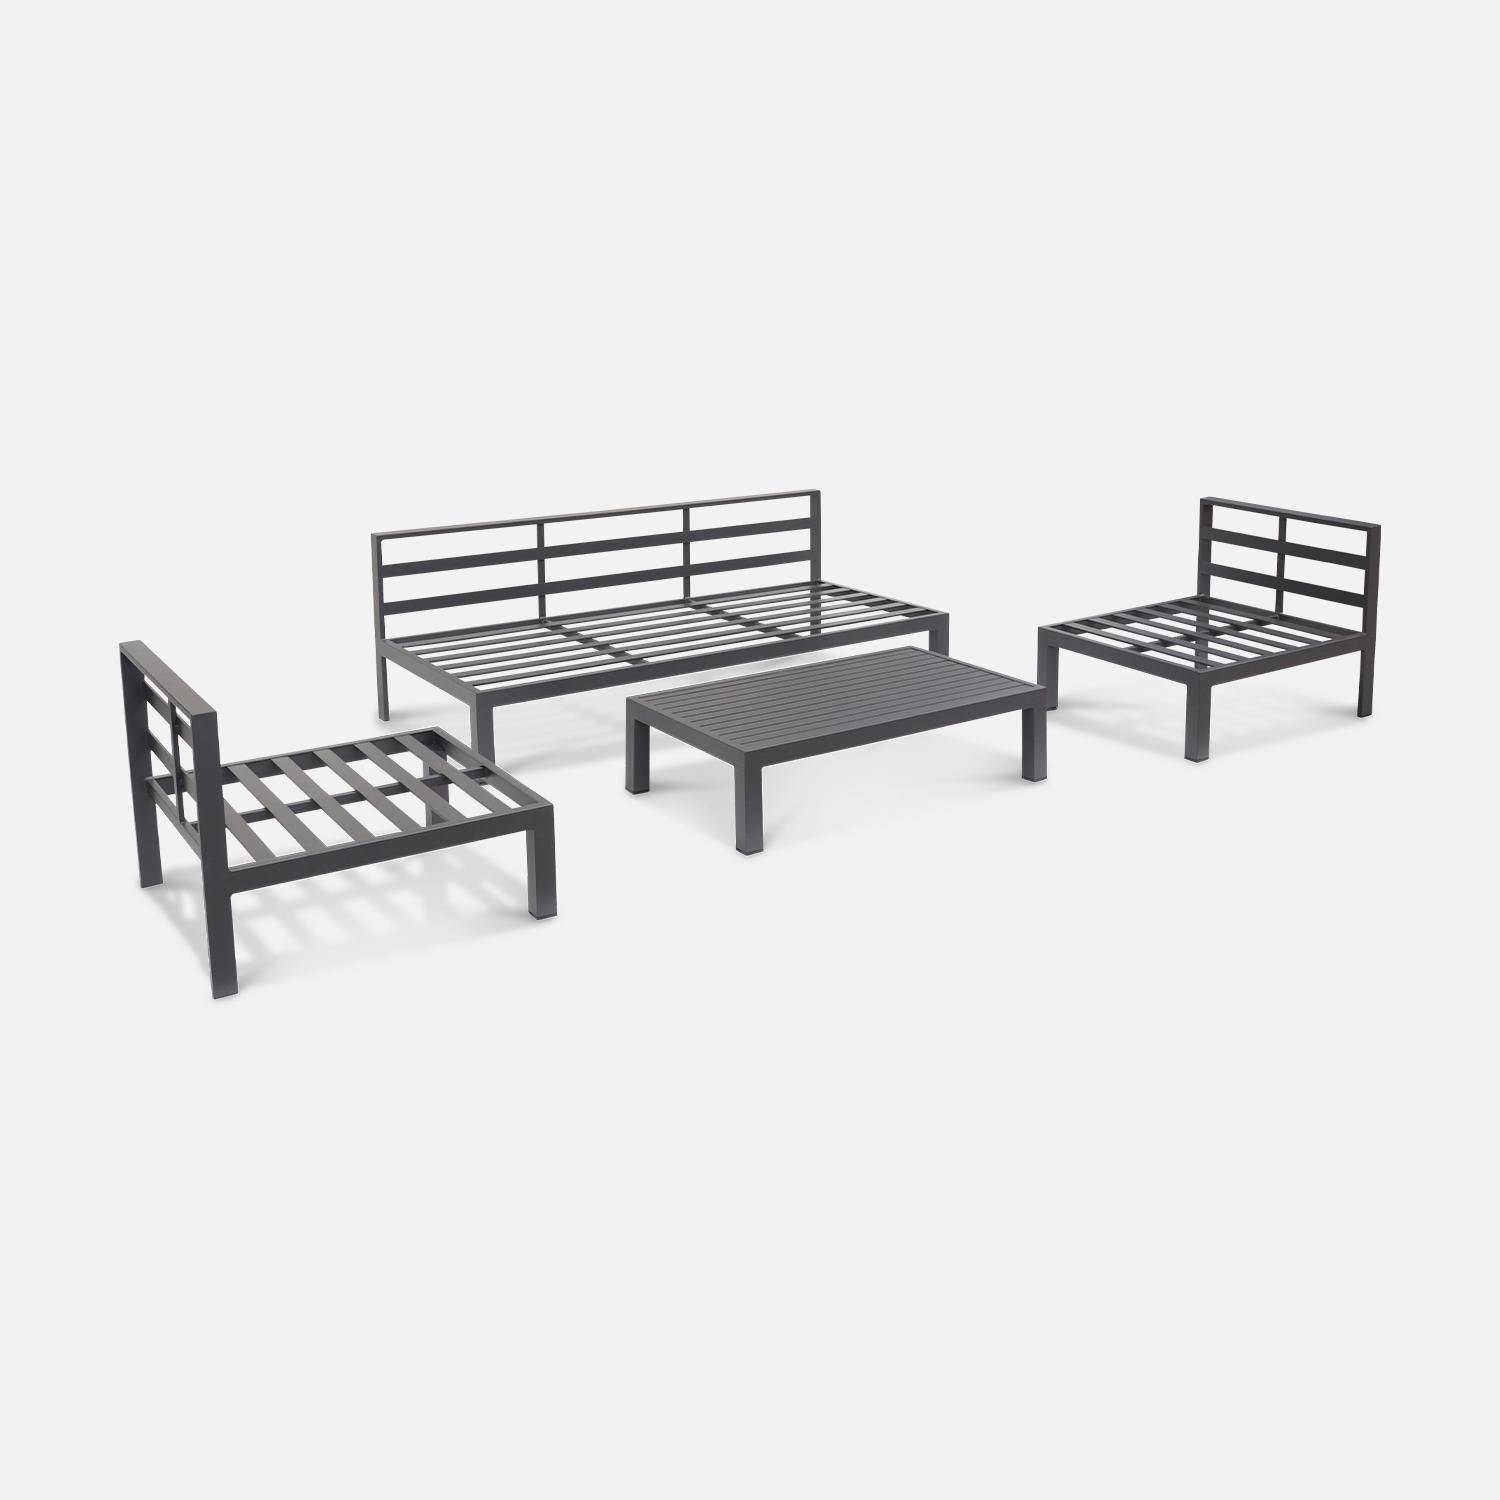 Conjunto de muebles de jardín de aluminio 4 plazas - asientos profundos - Rieti - gris antracita,sweeek,Photo5